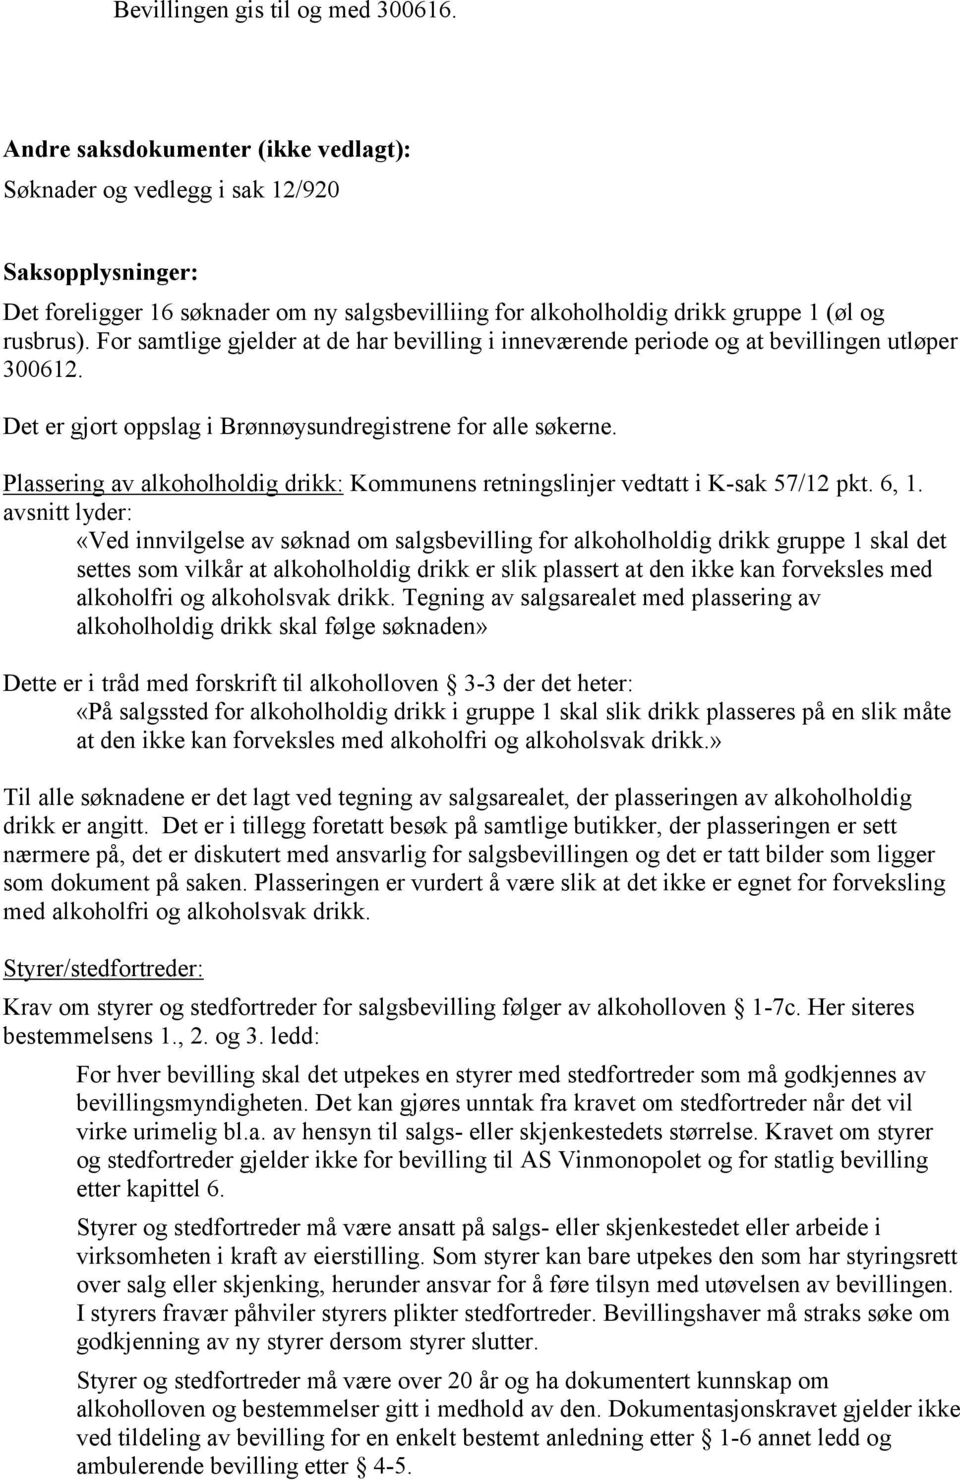 Plassering av alkoholholdig drikk: Kommunens retningslinjer vedtatt i K-sak 57/12 pkt. 6, 1.